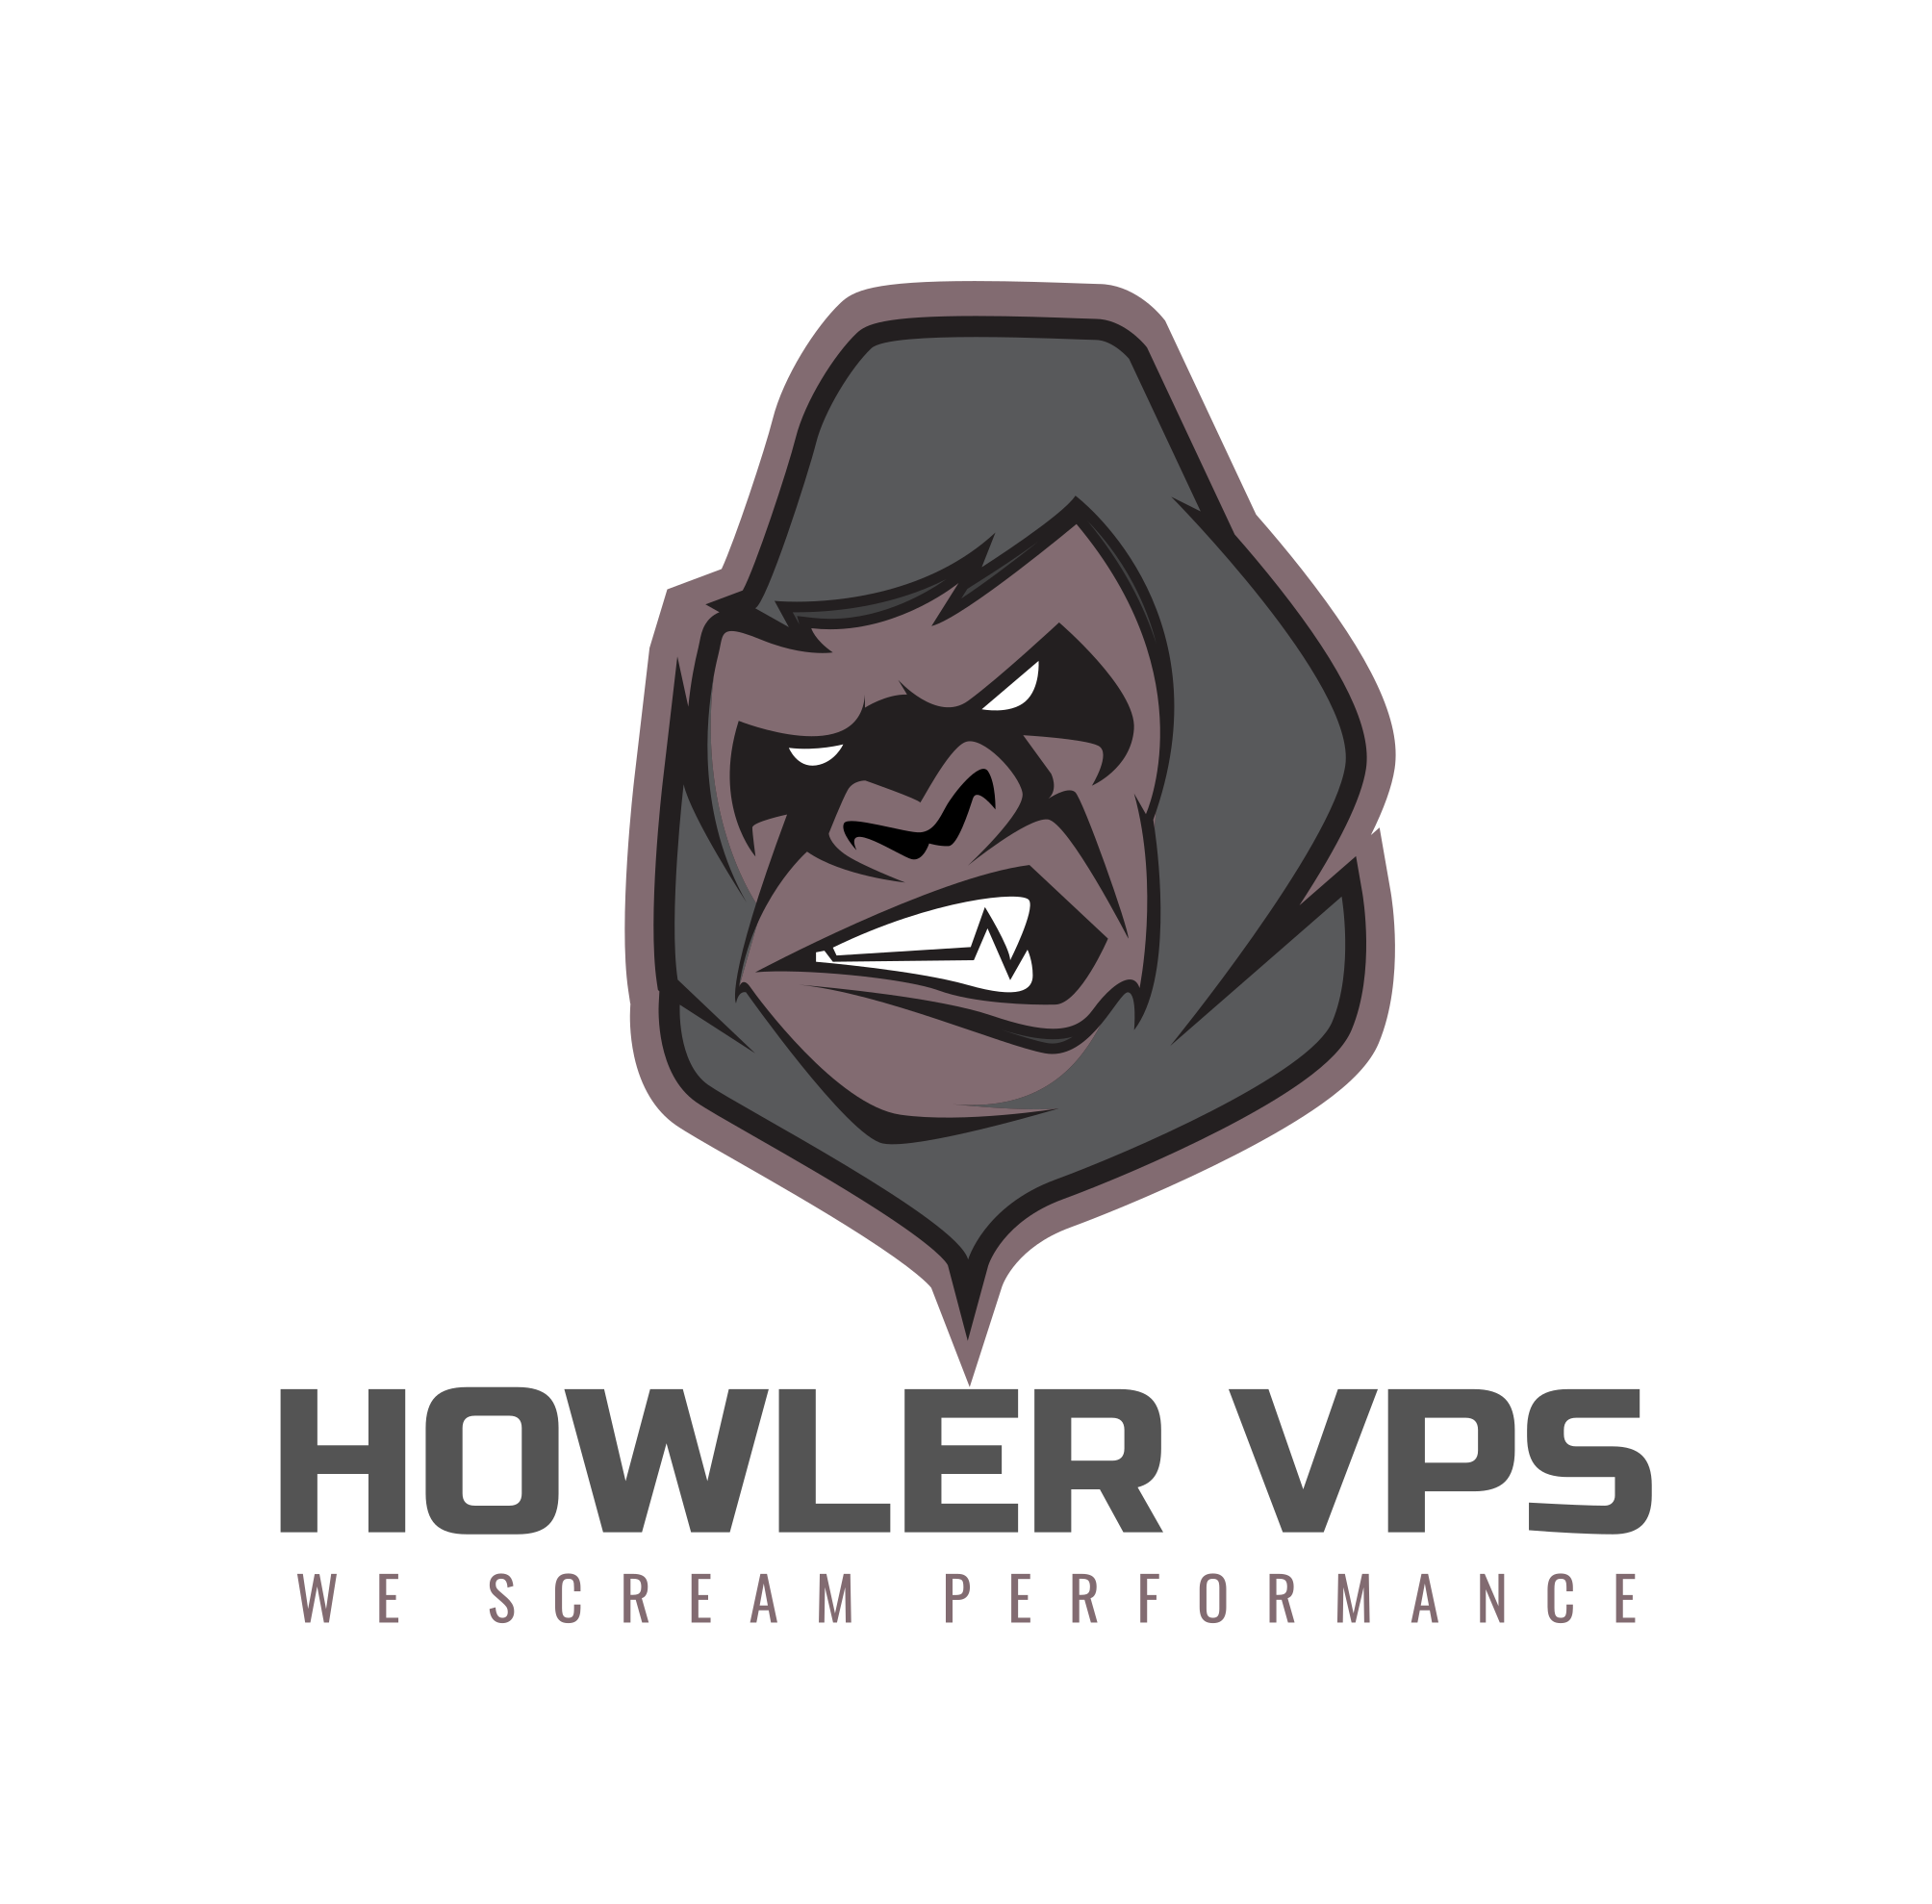 Howler VPS by Racknation